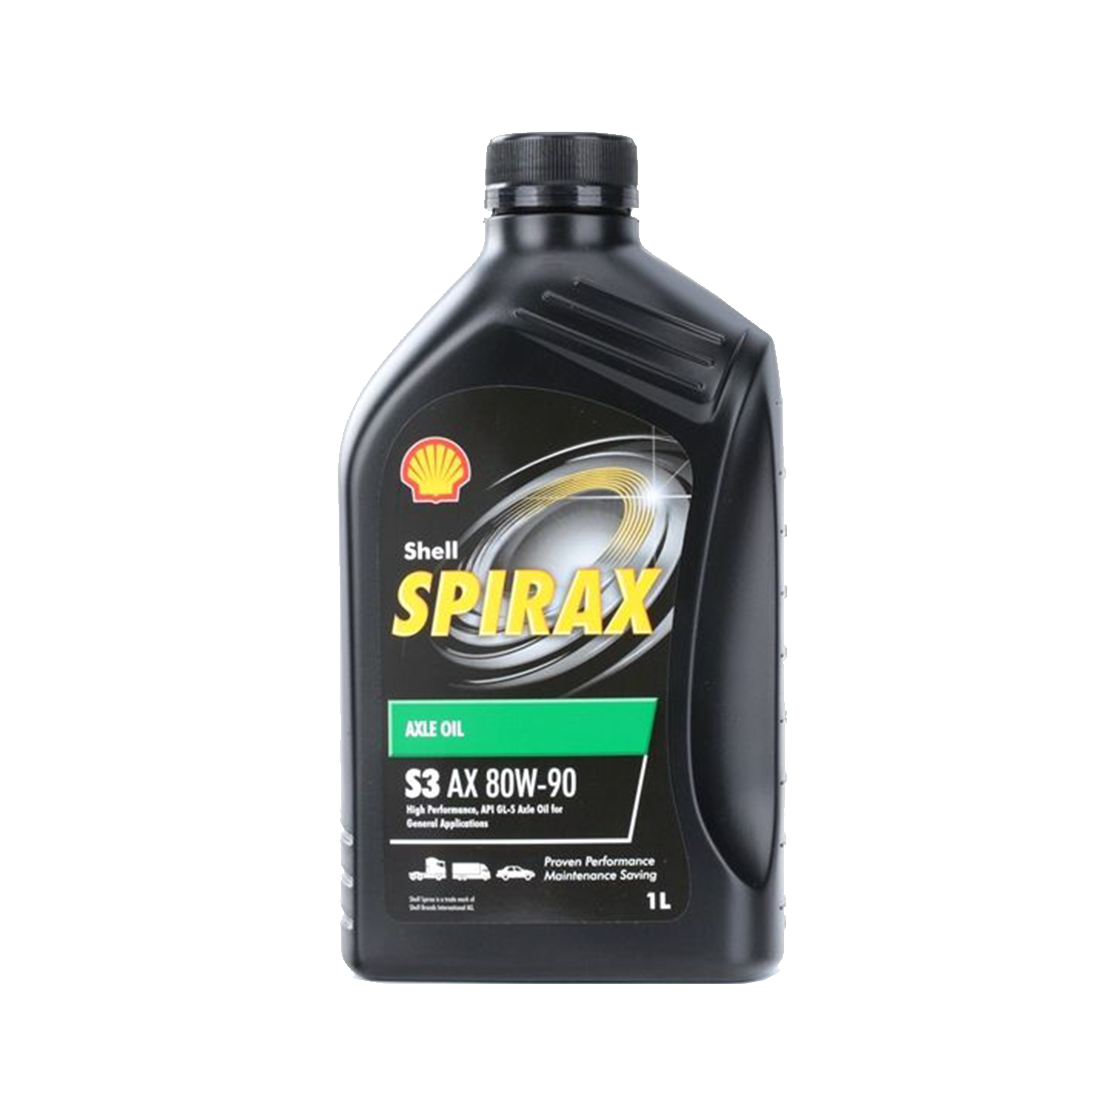 Shell Spirax S3 AX 80W-90, 1L